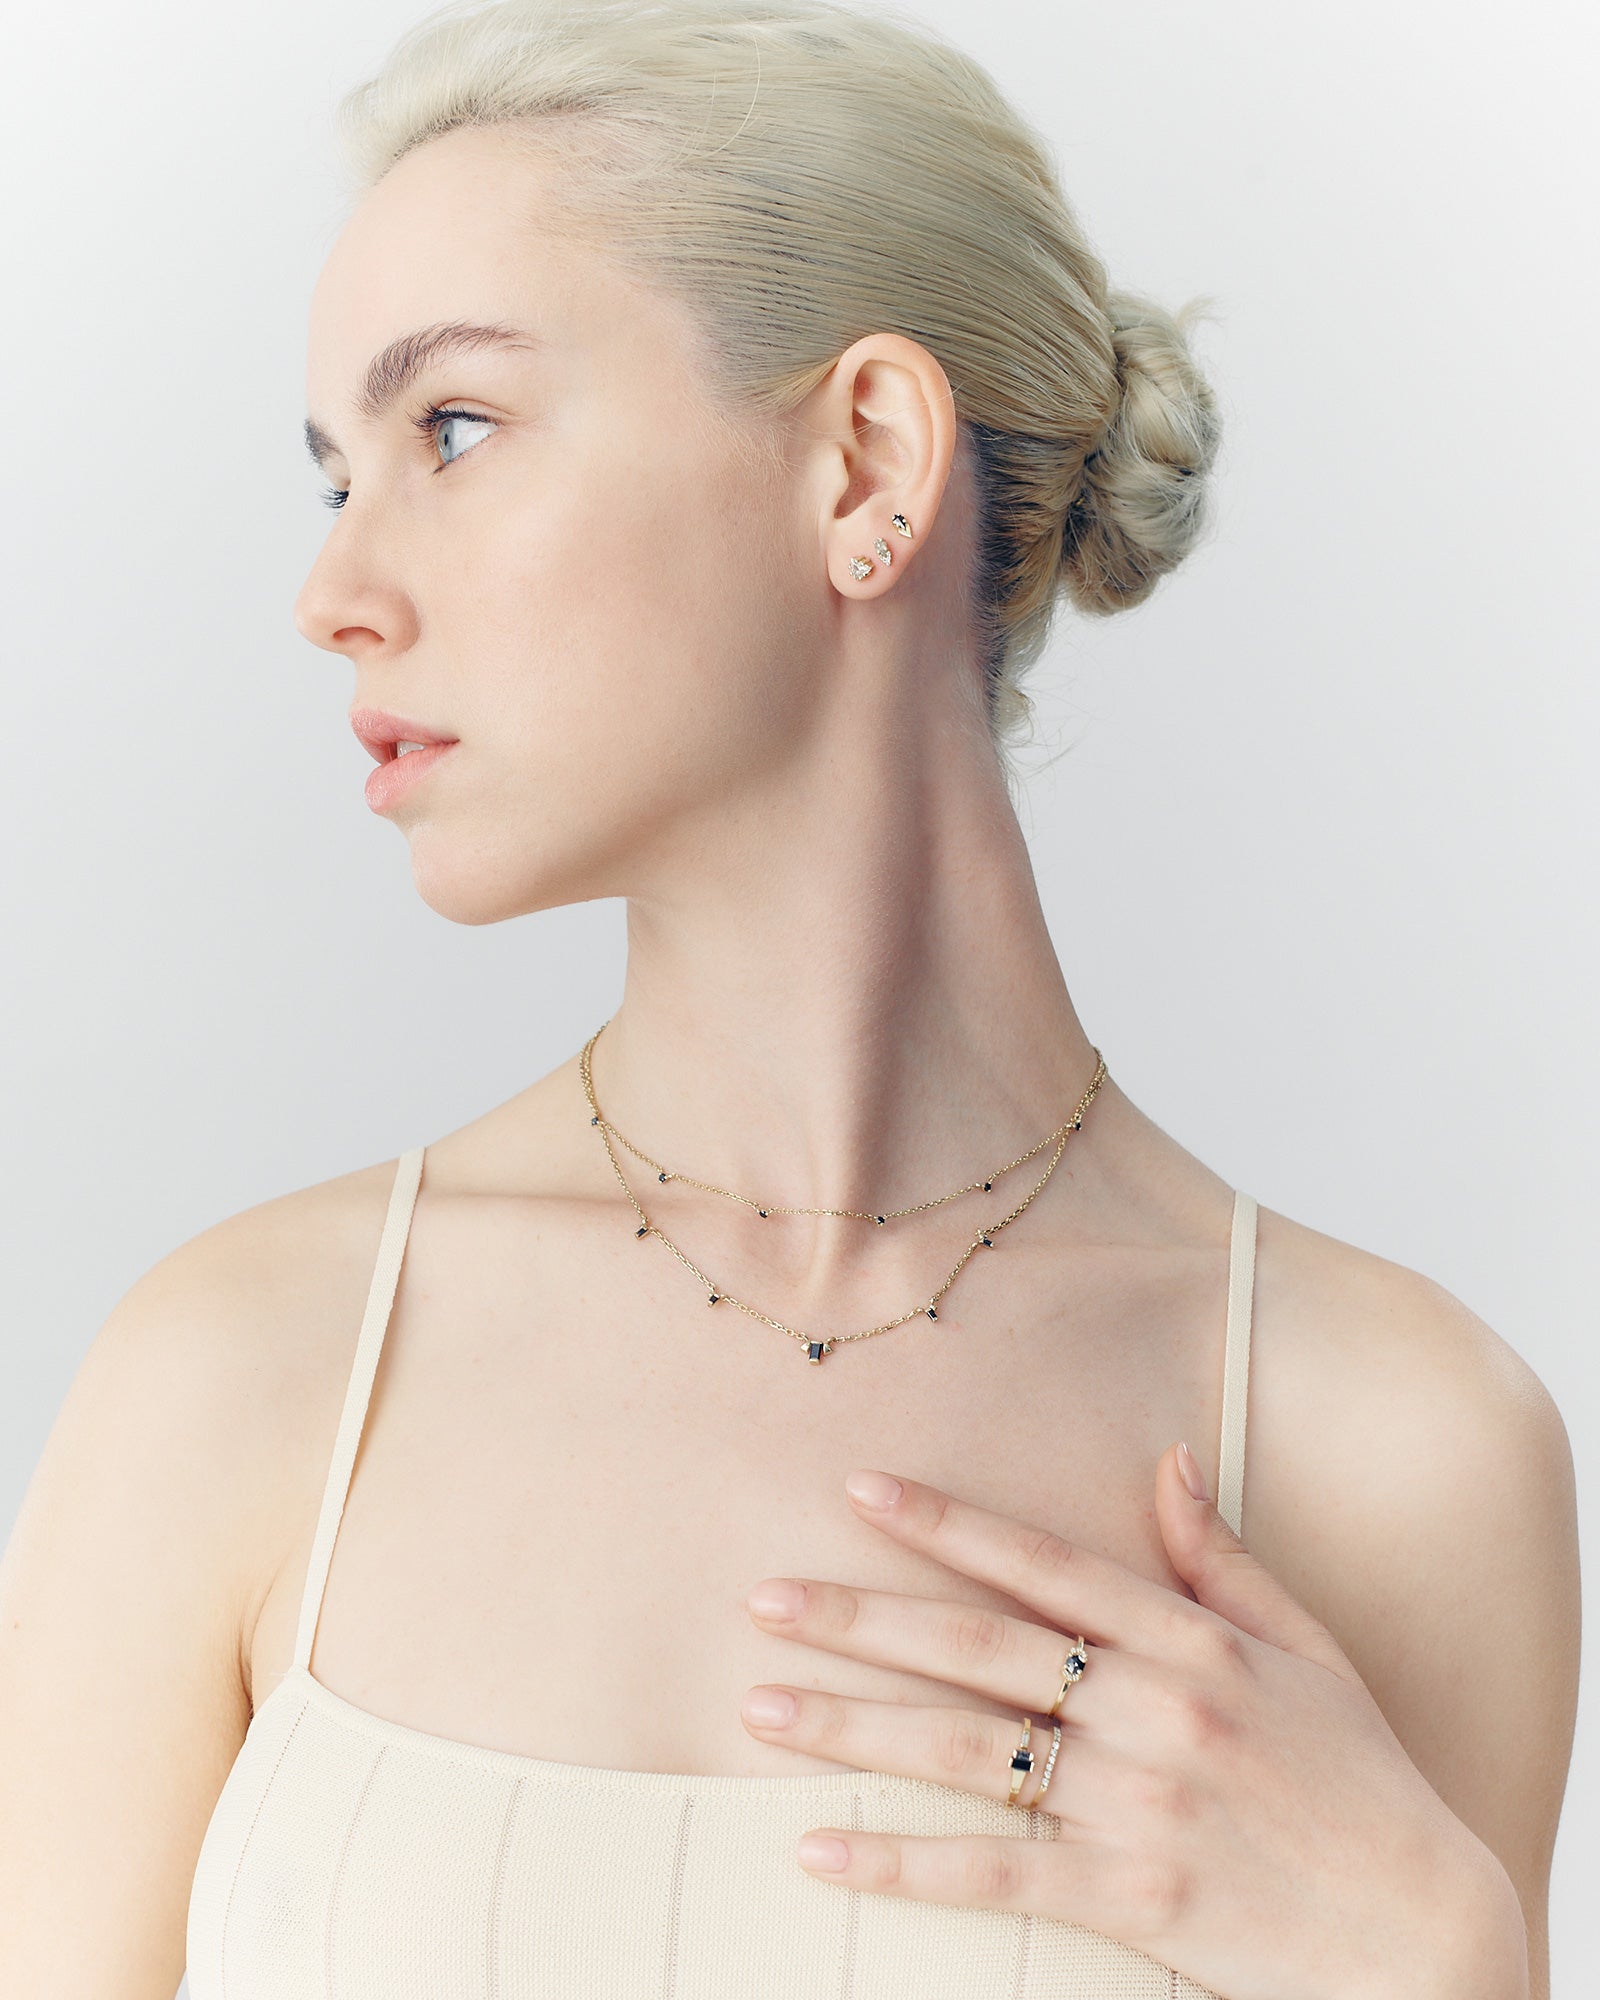 Renee Black Diamonds Necklace